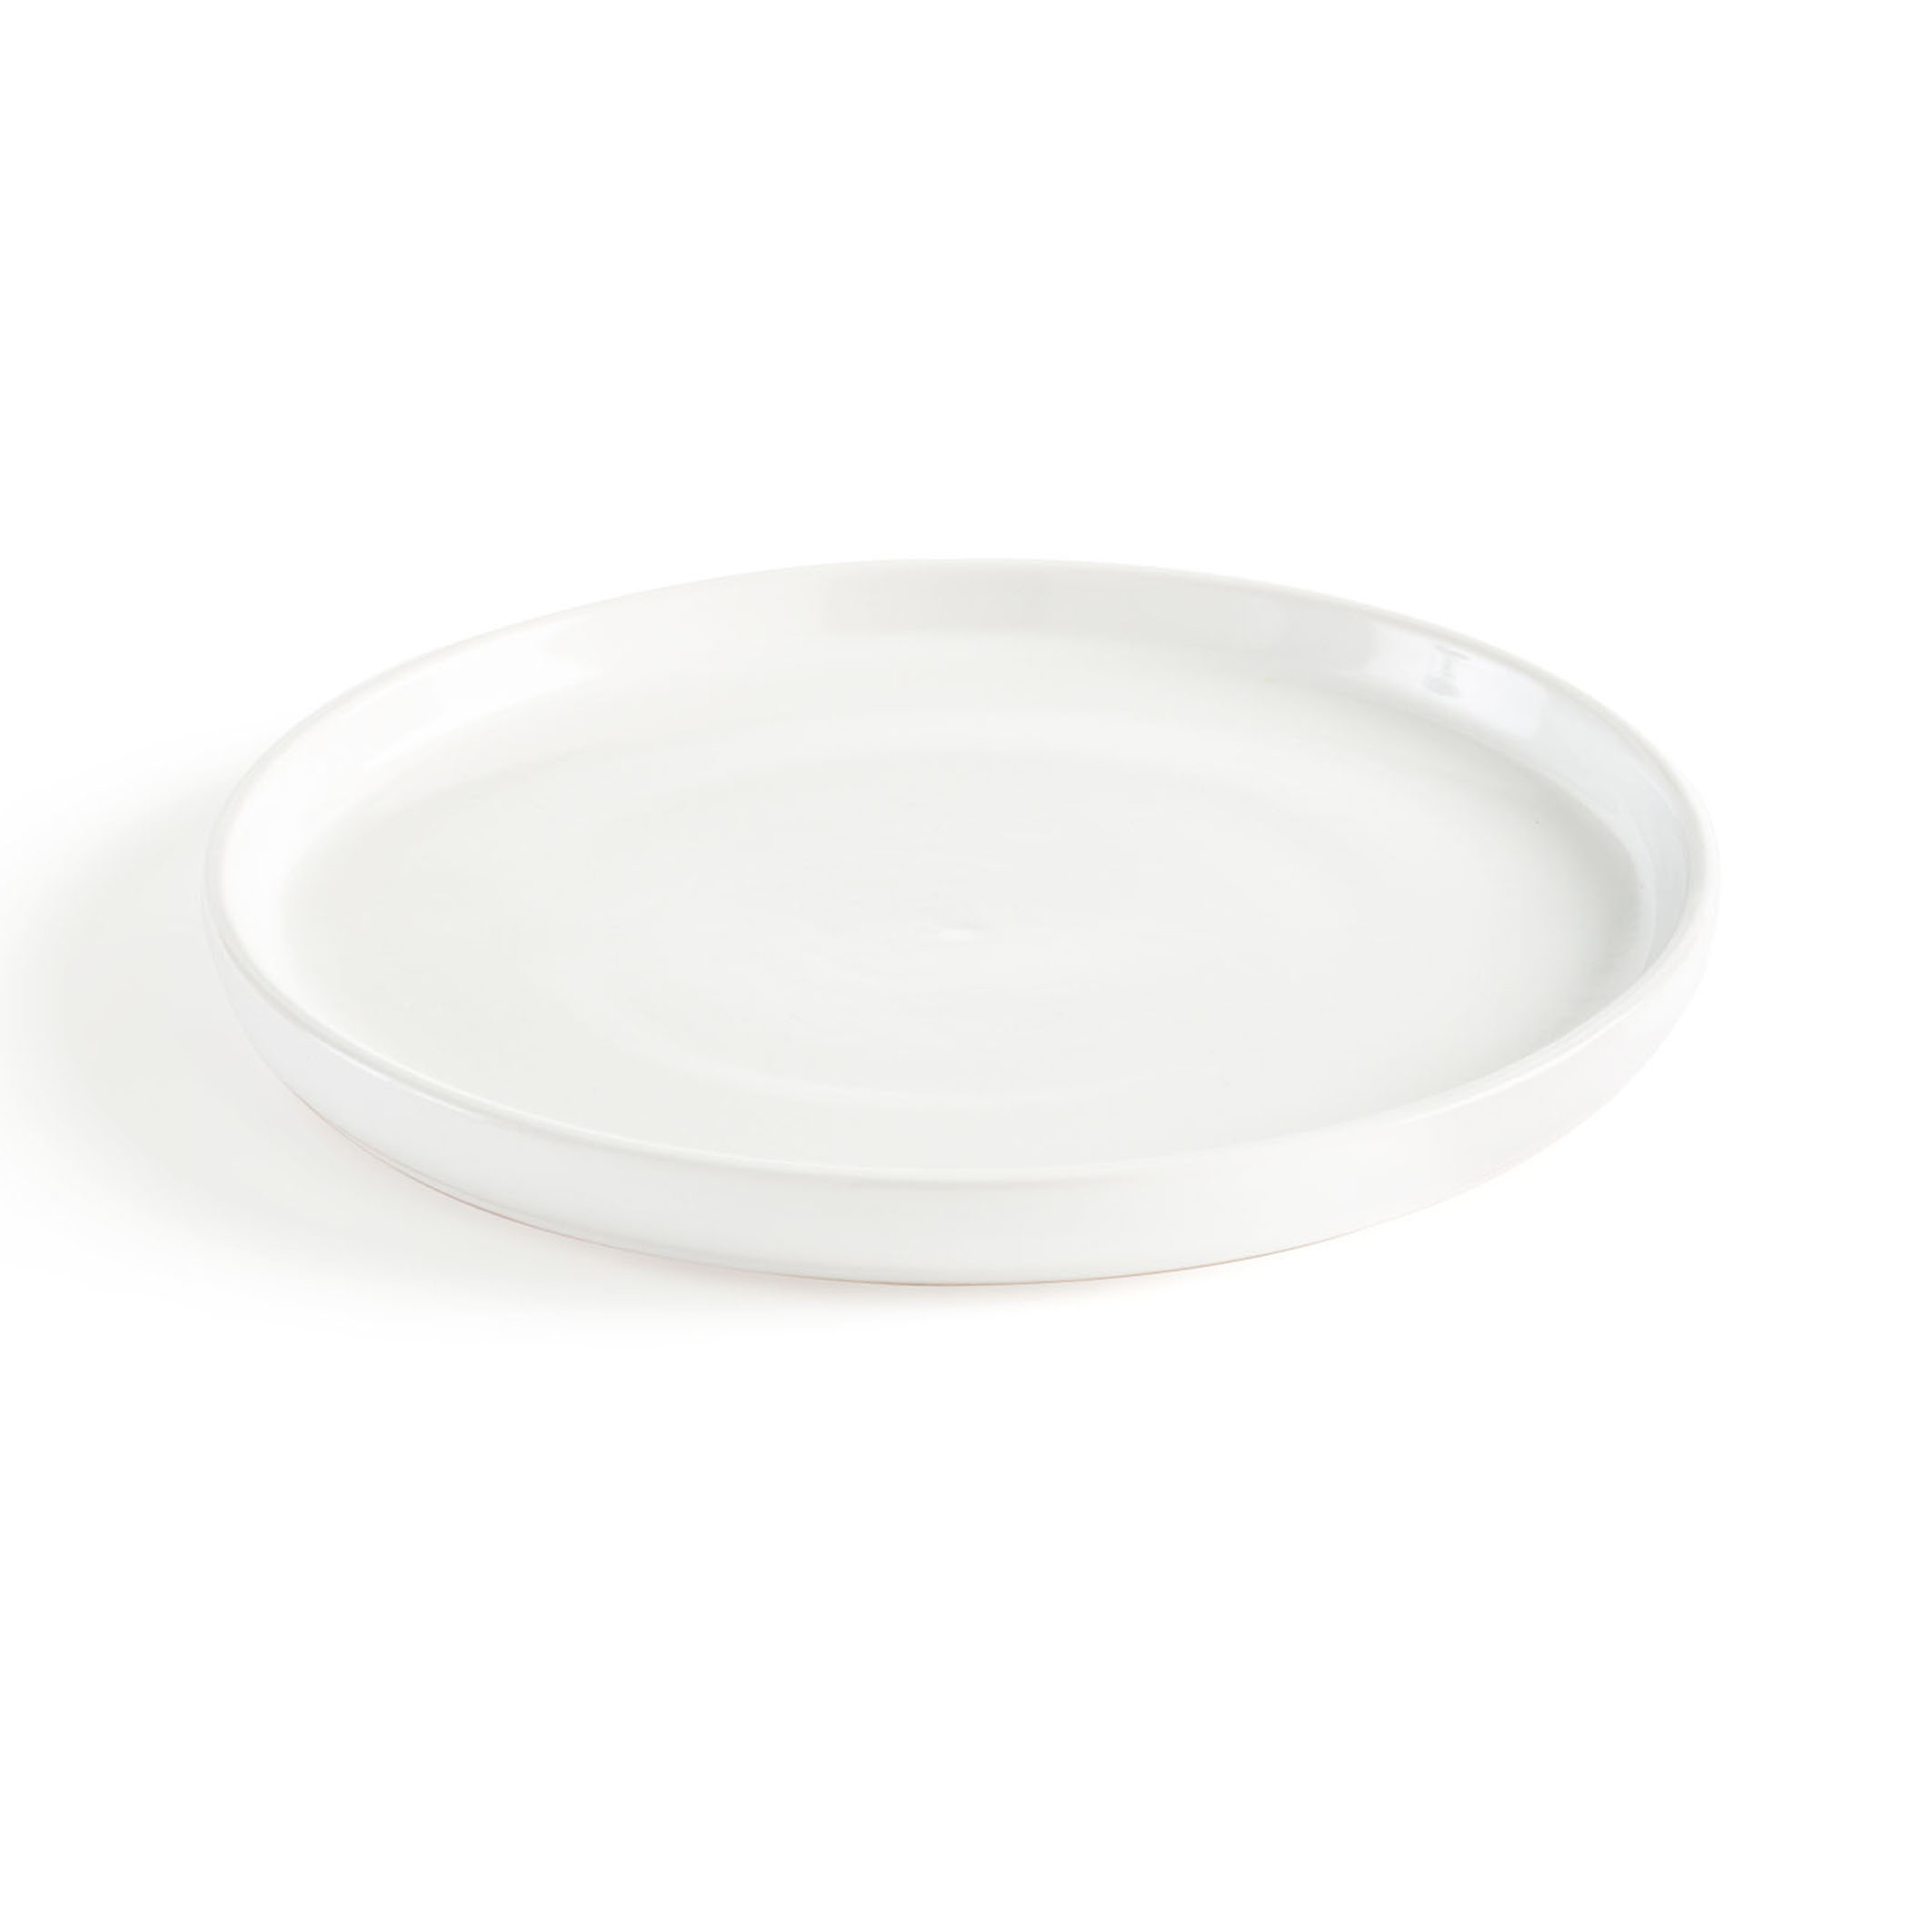 ORGA Lot de 25 assiettes blanches biodégradables et jetables extra résistantes 18 cm 